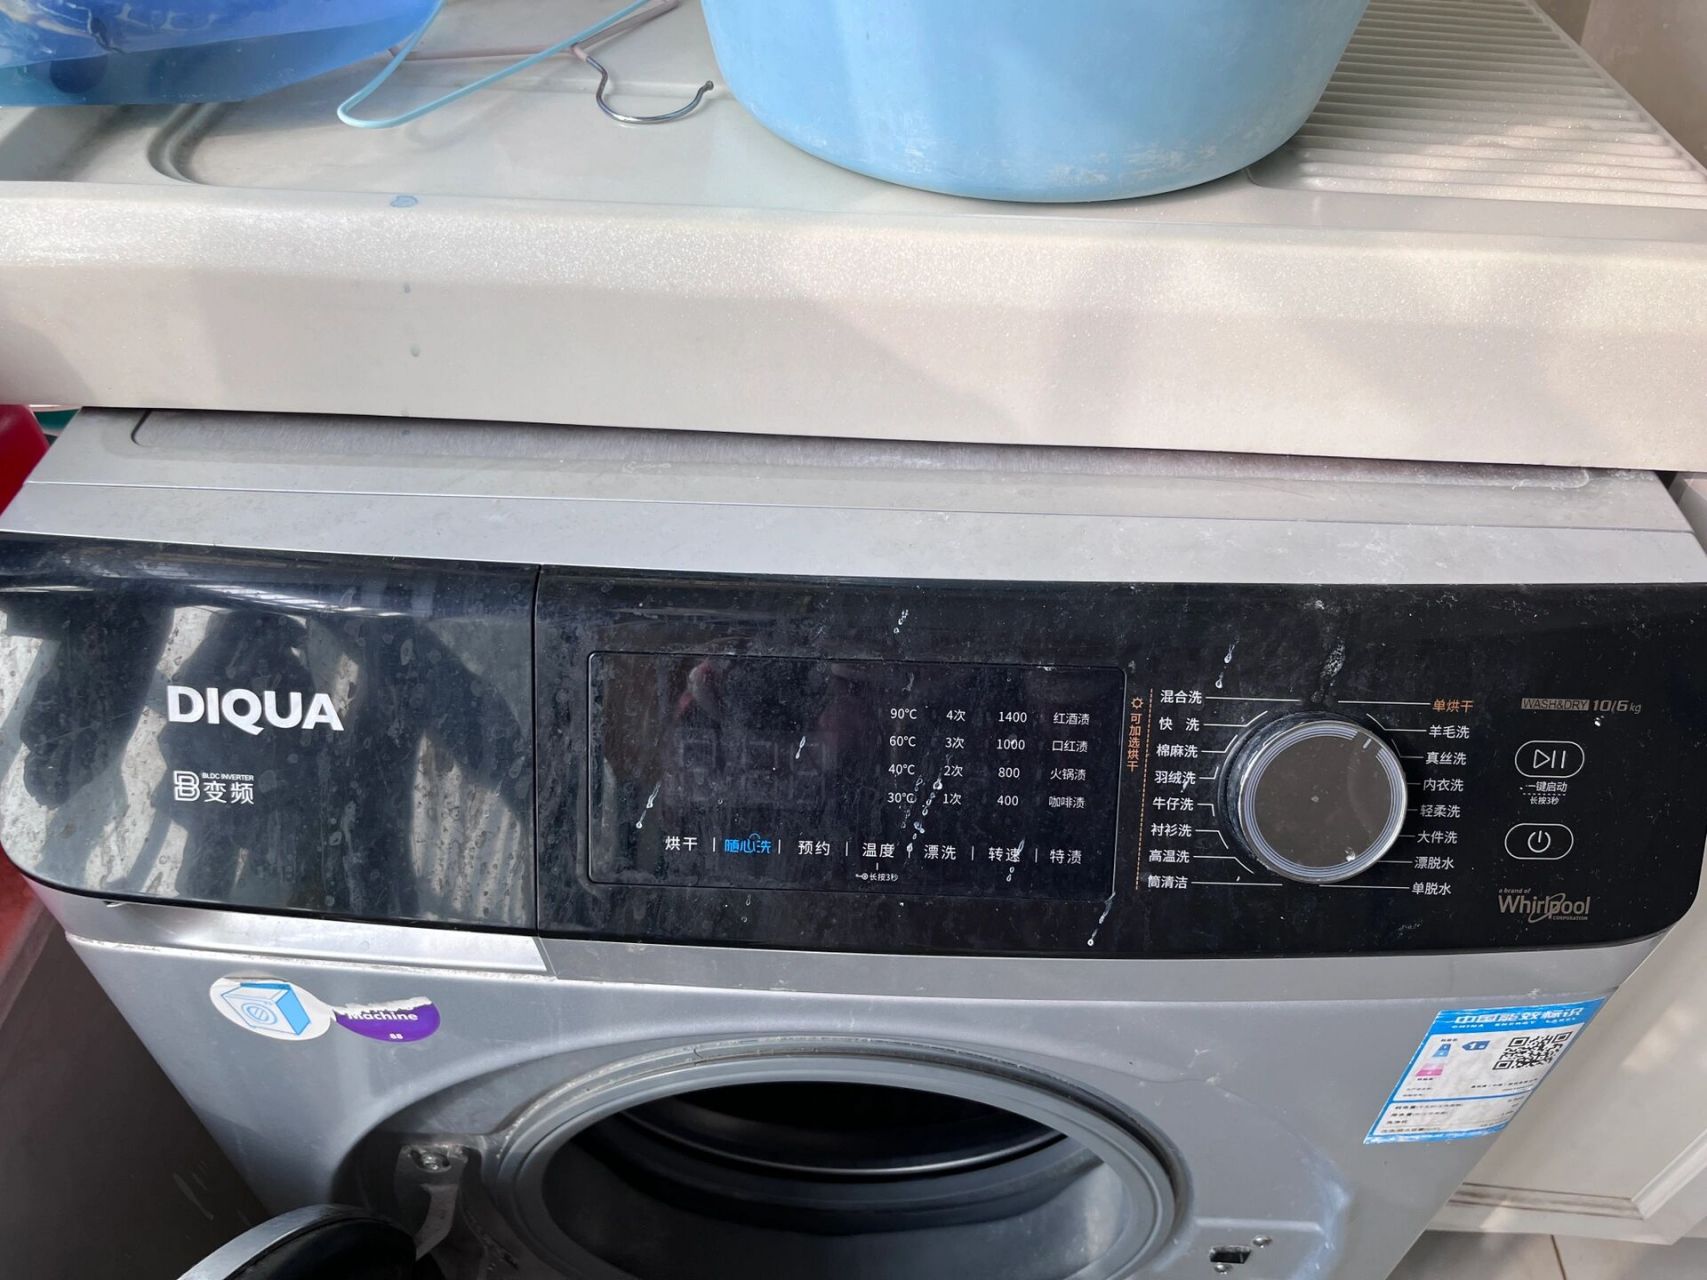 diqua洗衣机教程图片